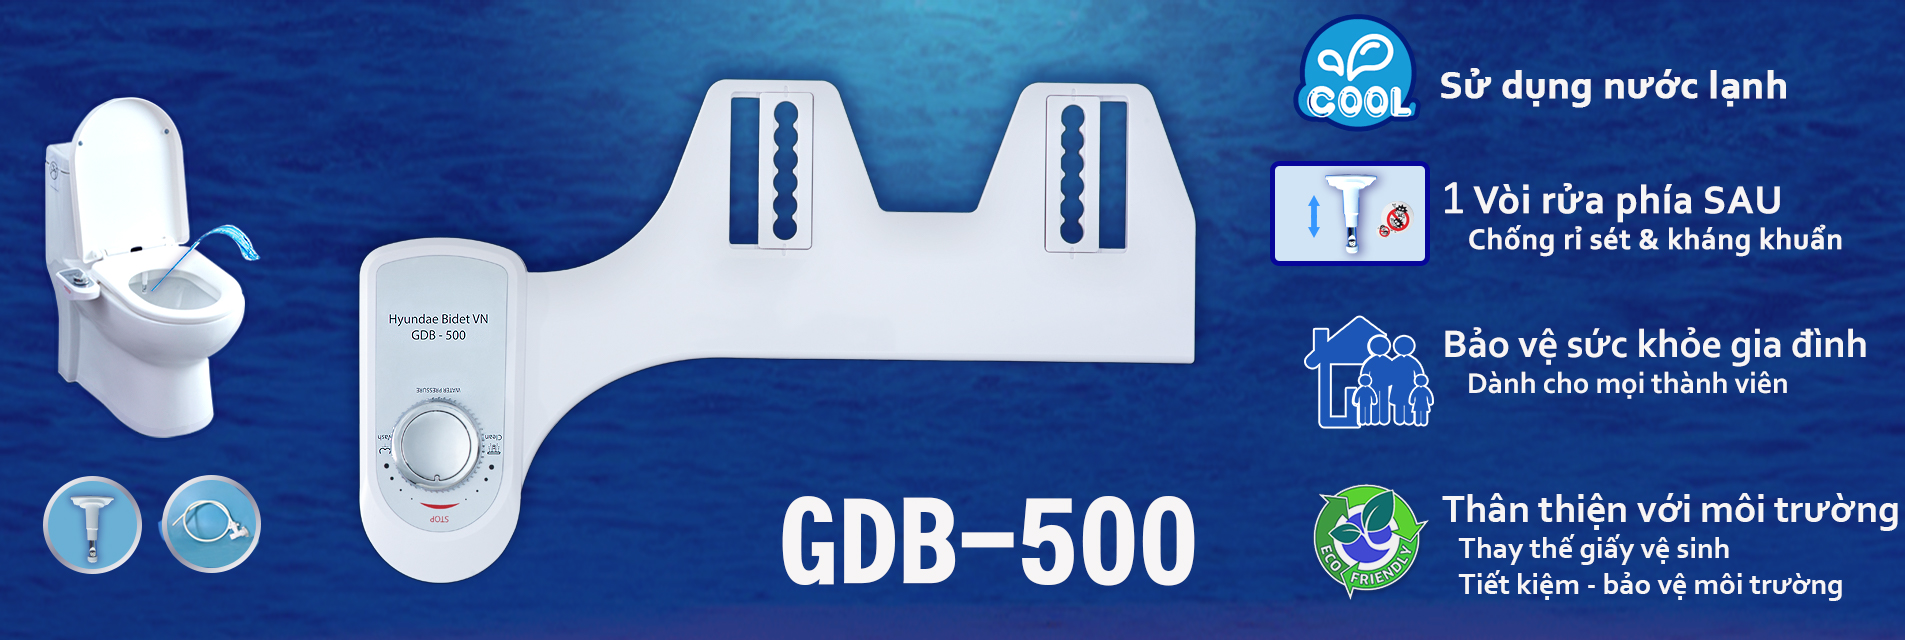 GDB-500 Thiết bị vệ sinh nhà tắm thiết yếu cho mọi thành viên